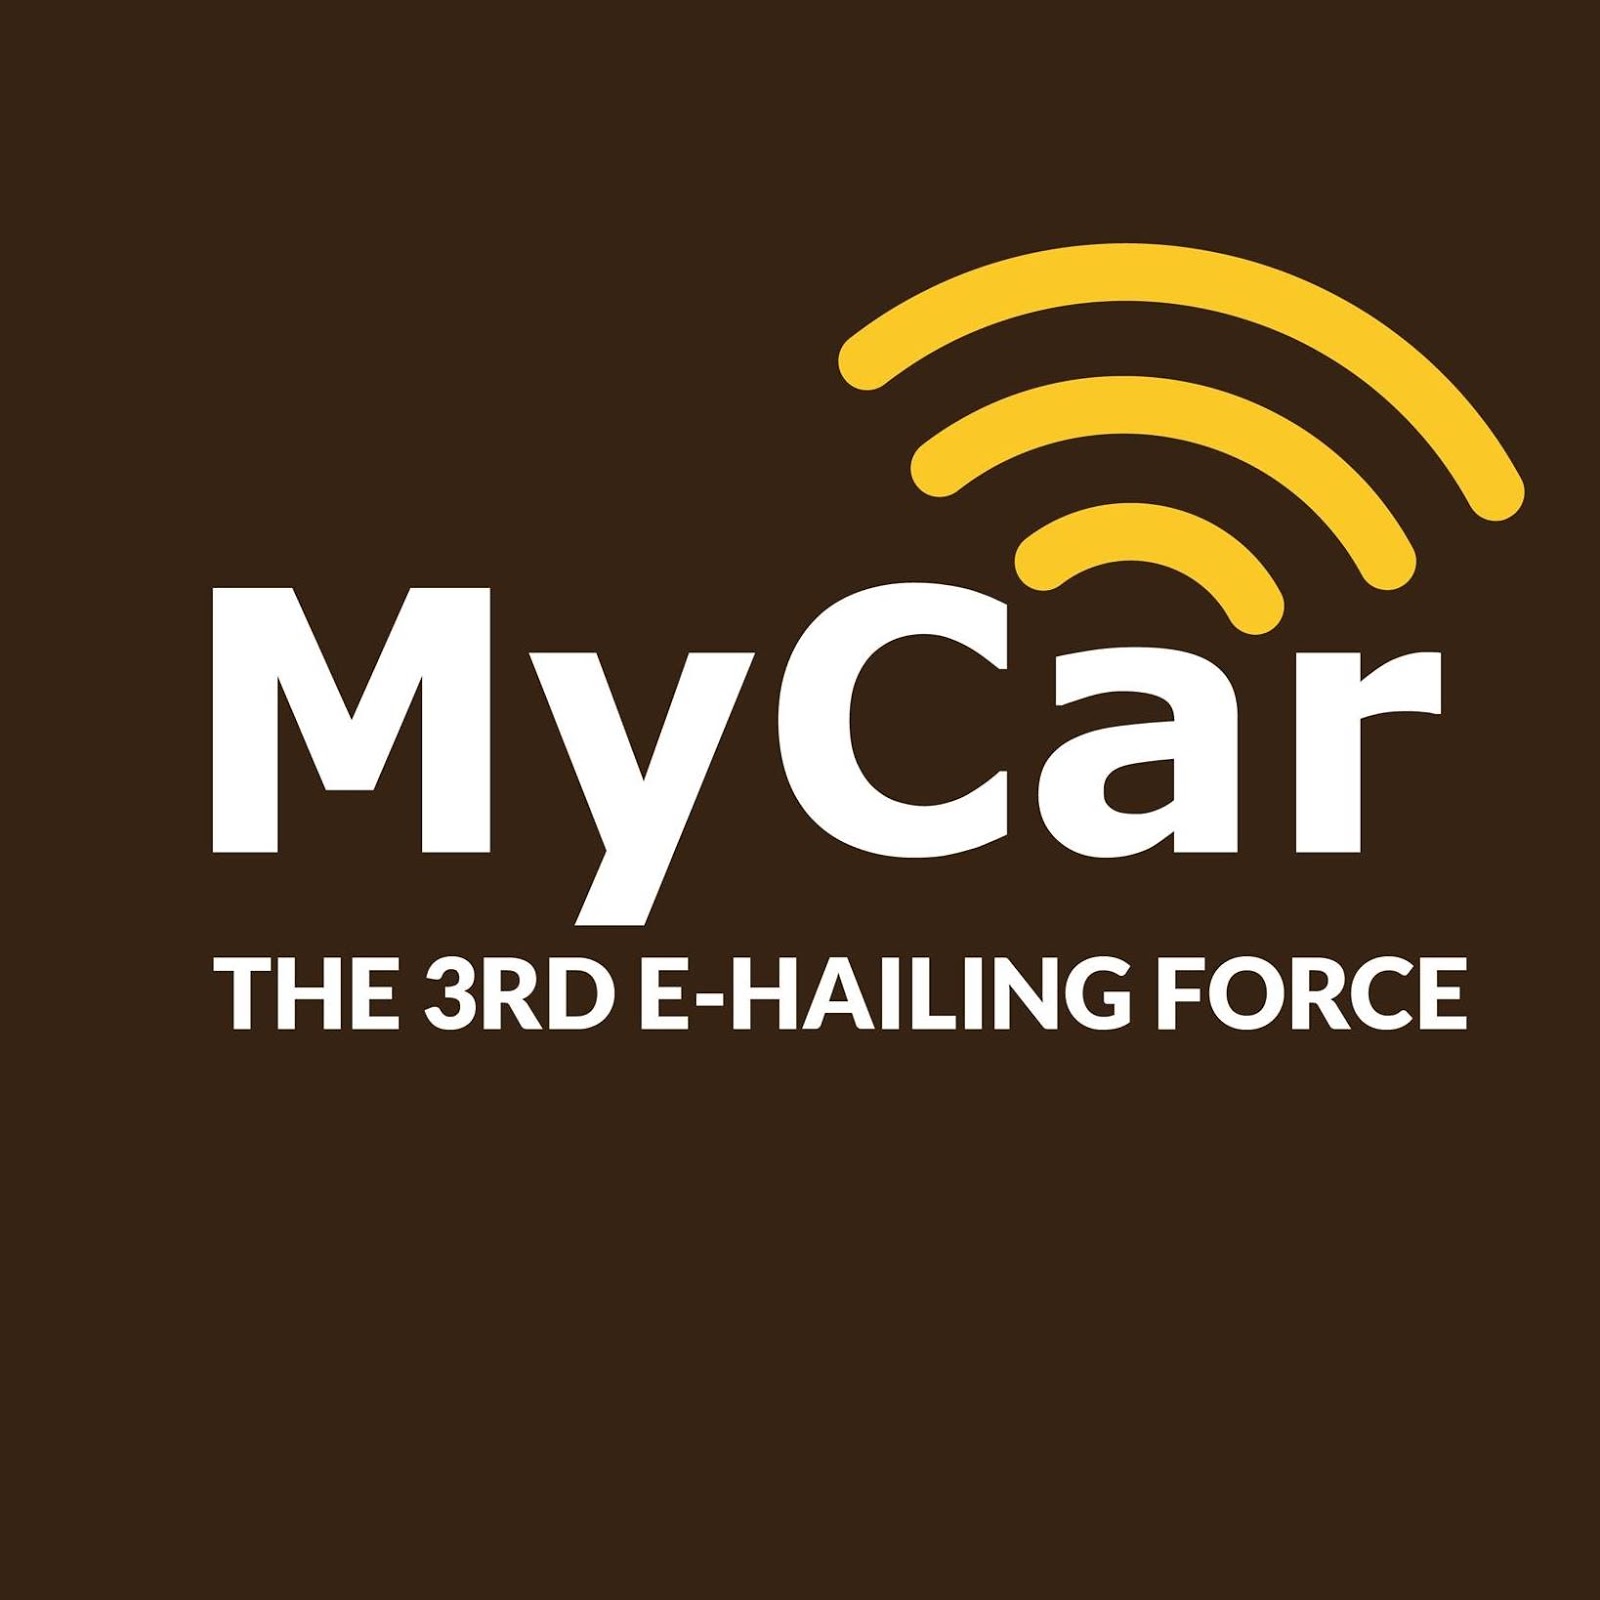 4mycar ru. МАЙКАР. MYCAR Finance. MYCAR kz logo. @MYCAR_sa.